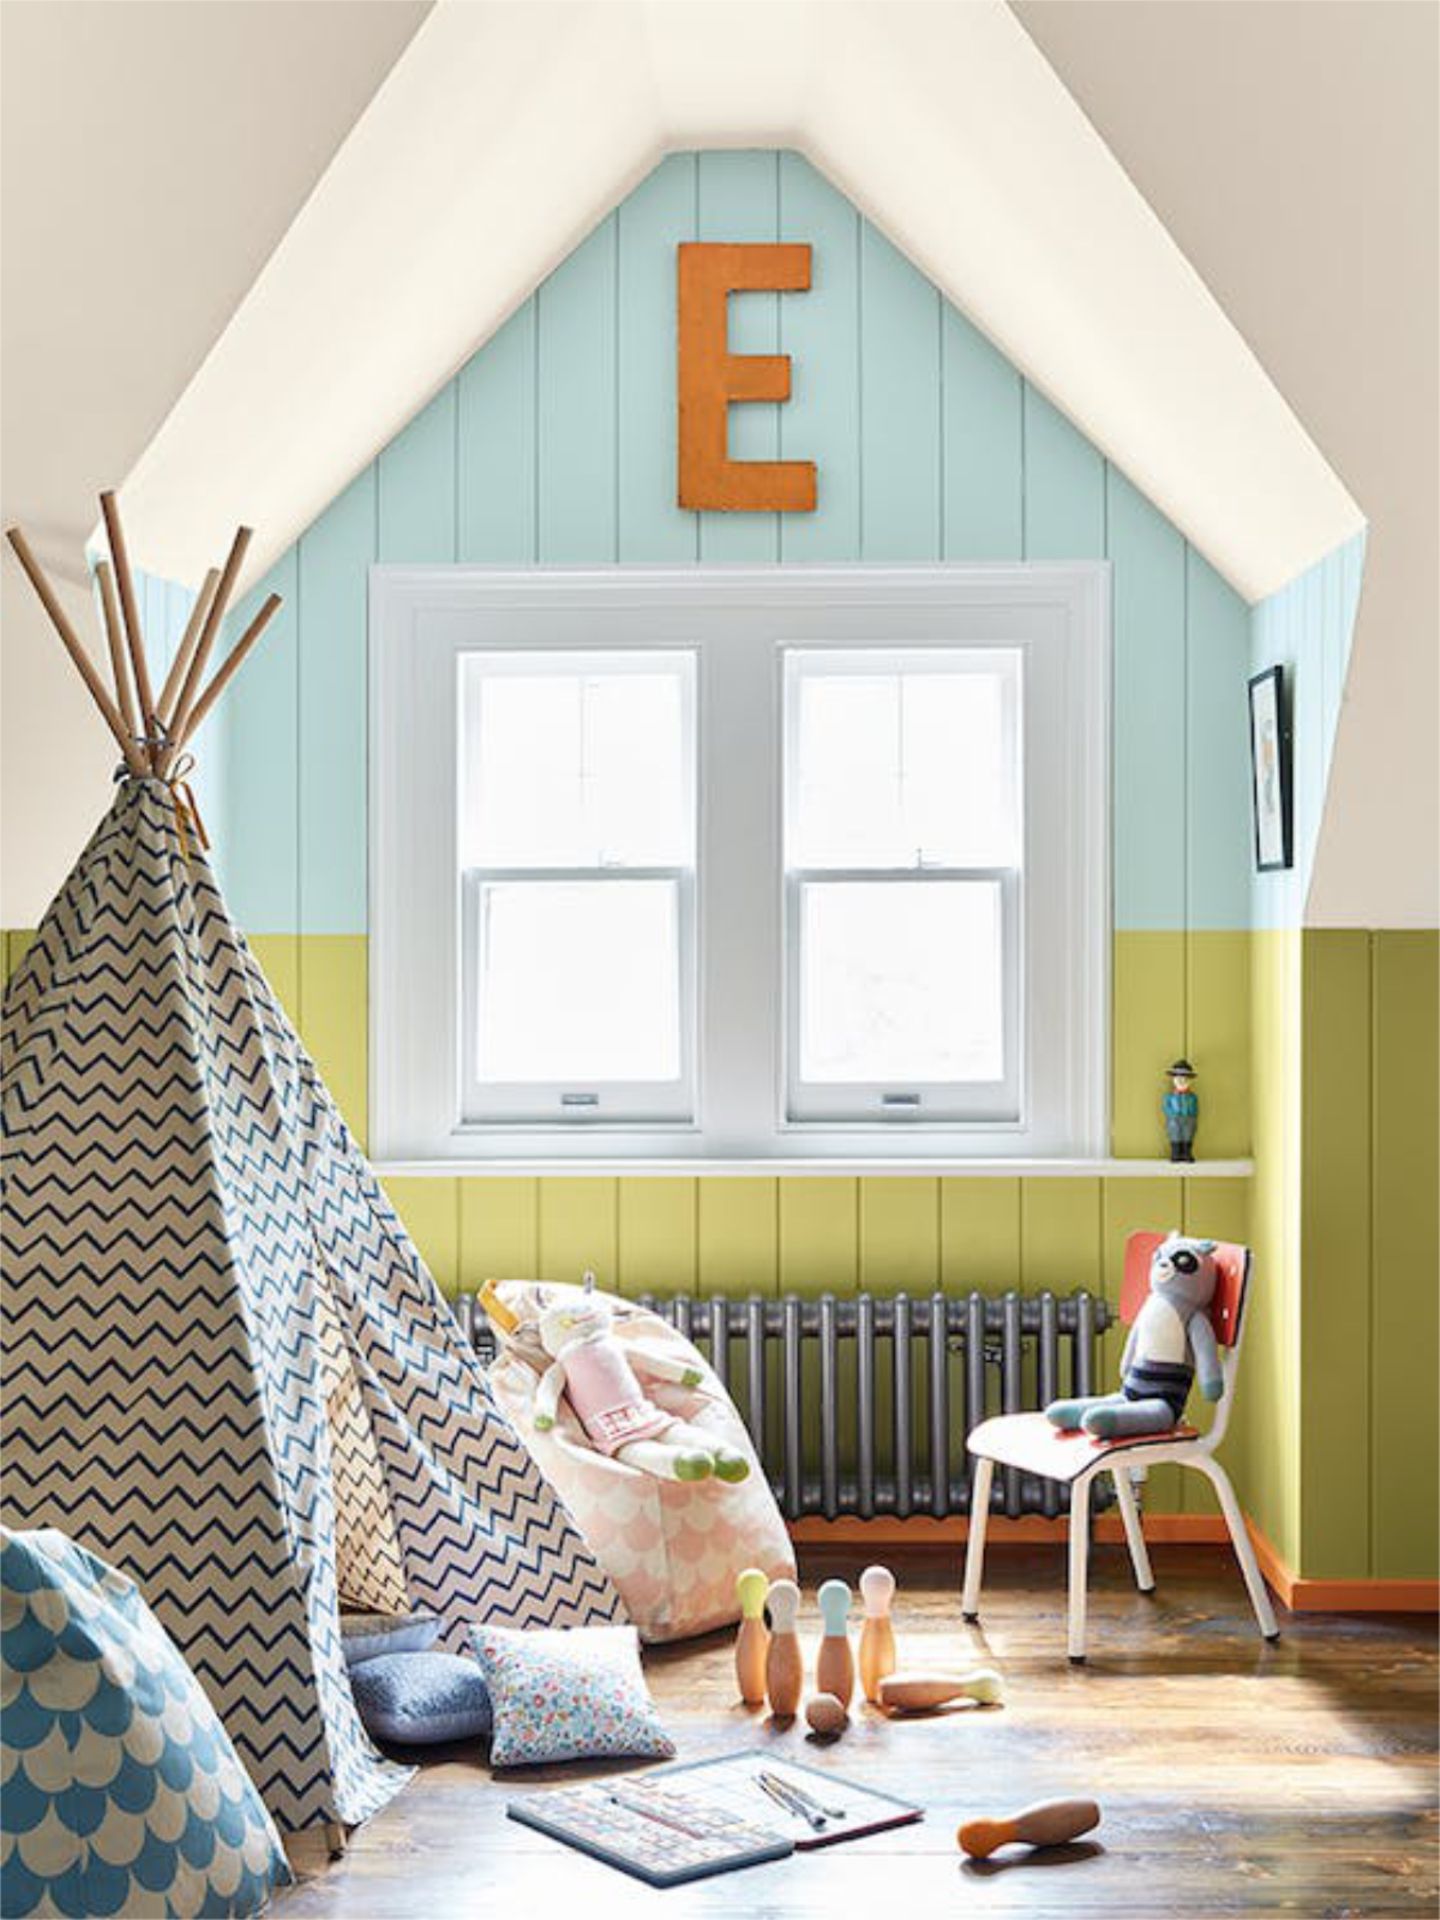 Kinderzimmer mit Tipi und farbiger Wandgestaltung in vier verschiedenen Farbtönen